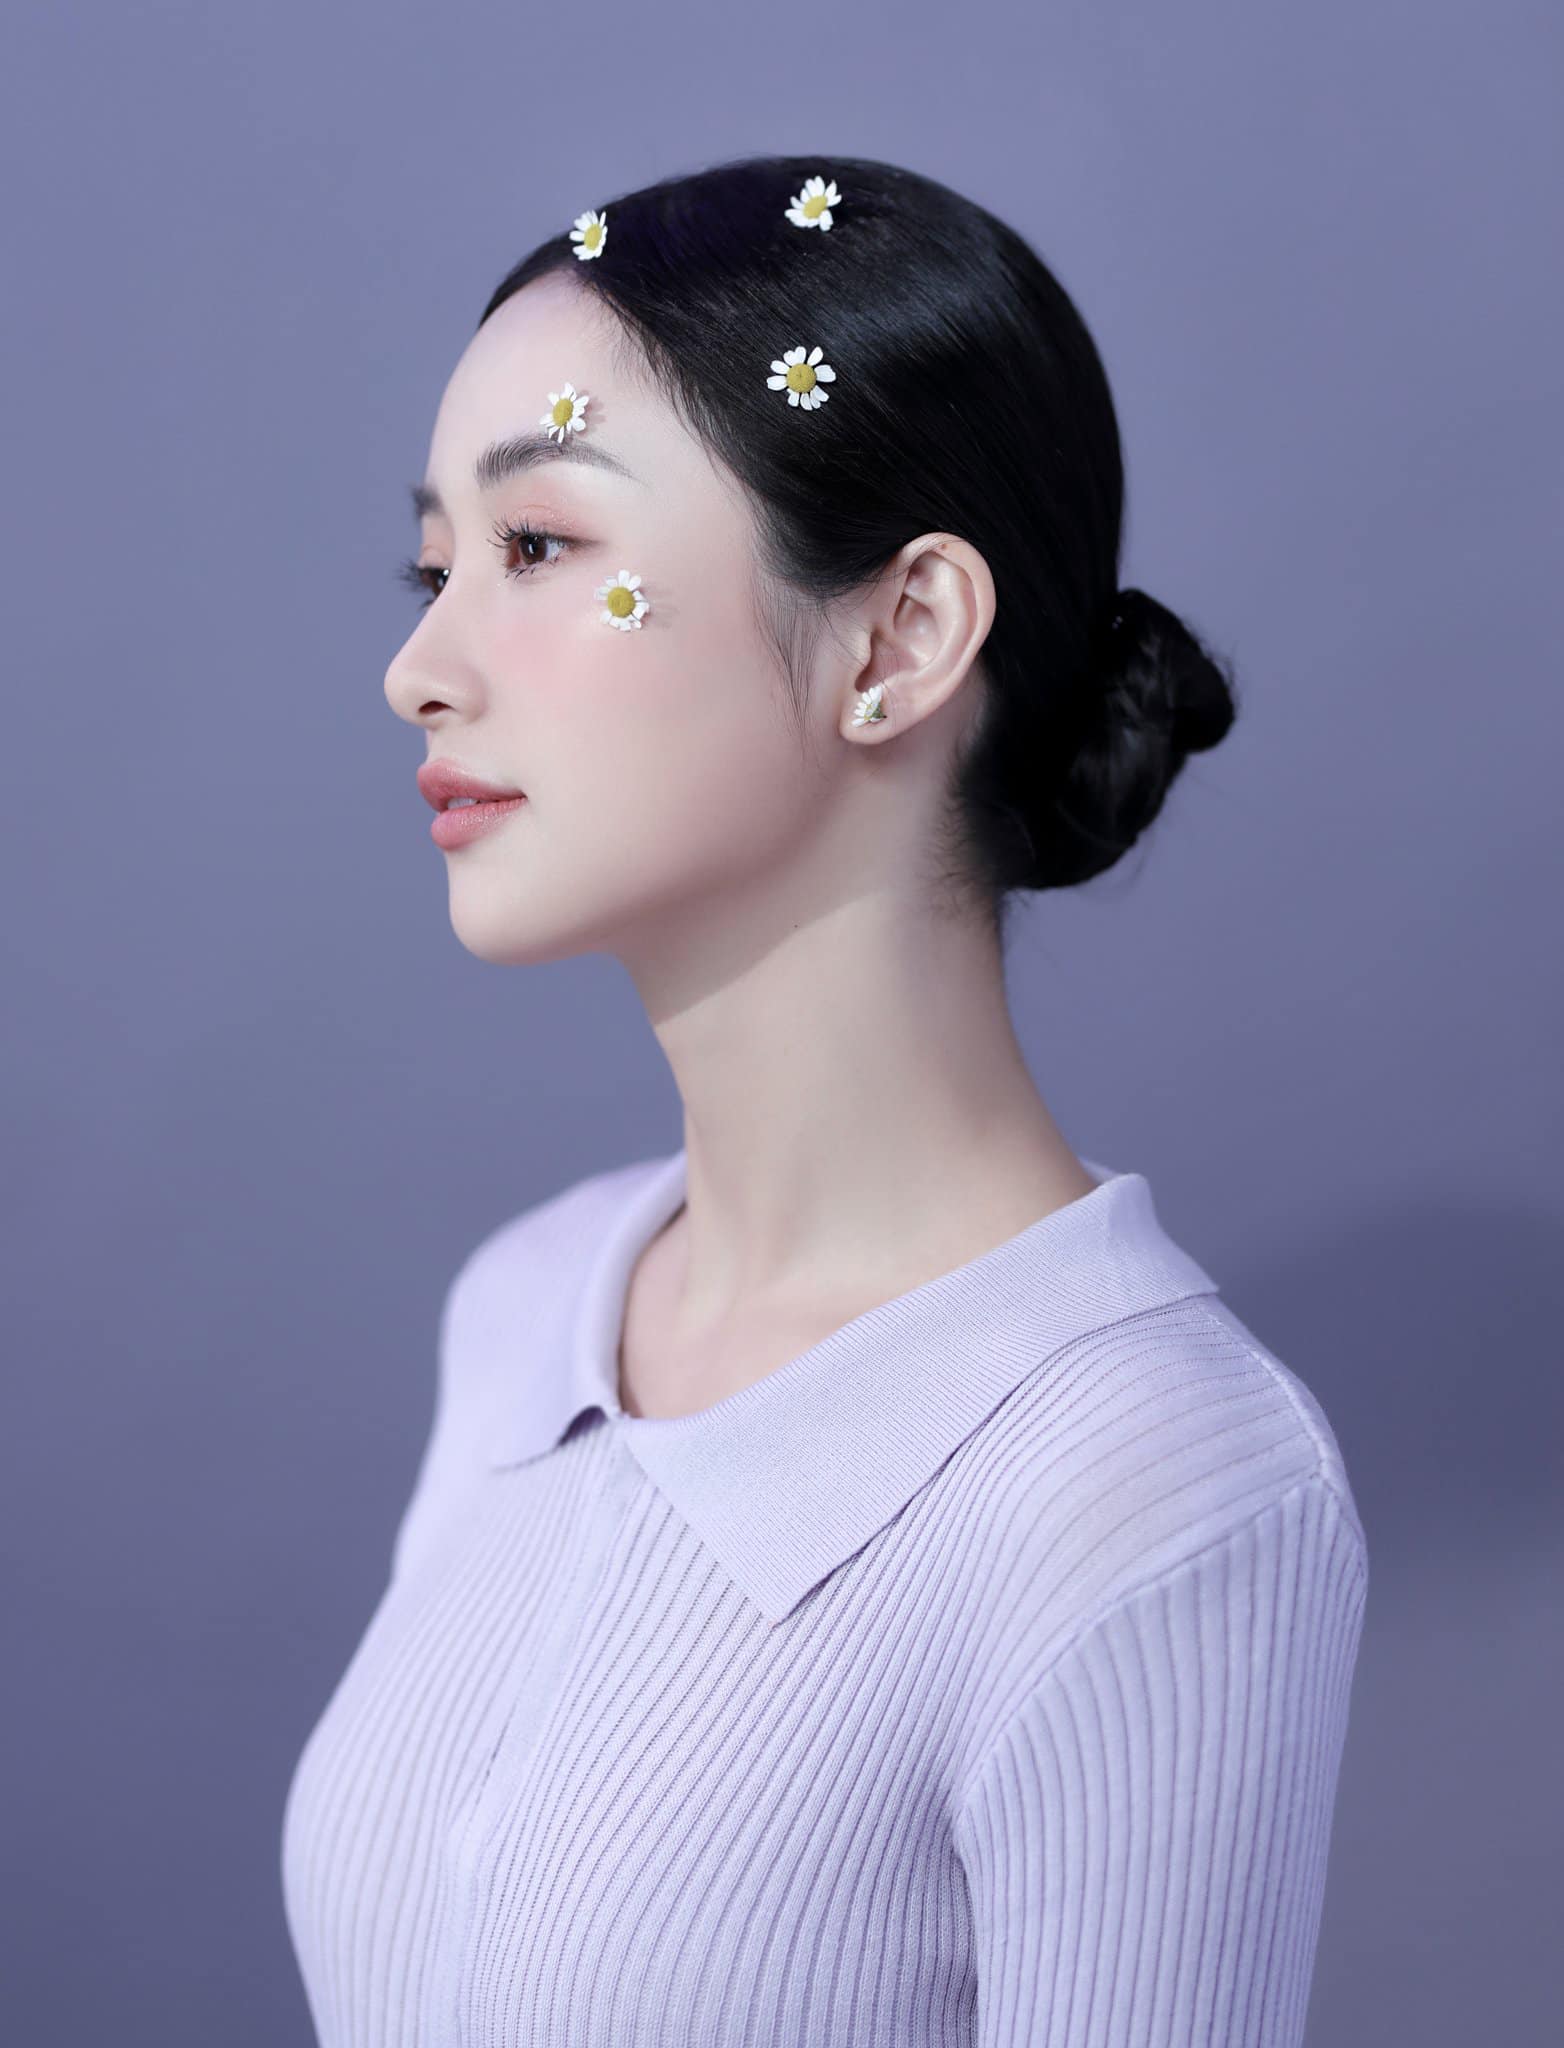 Jun Vũ khoe nhan sắc xinh đẹp hút hồn trong loạt ảnh nghệ thuật mới. Cô từng tự ti vì thân hình gầy guộc nhưng hiện tại hài lòng với cân nặng 44 kg cùng vòng eo 56 cm.